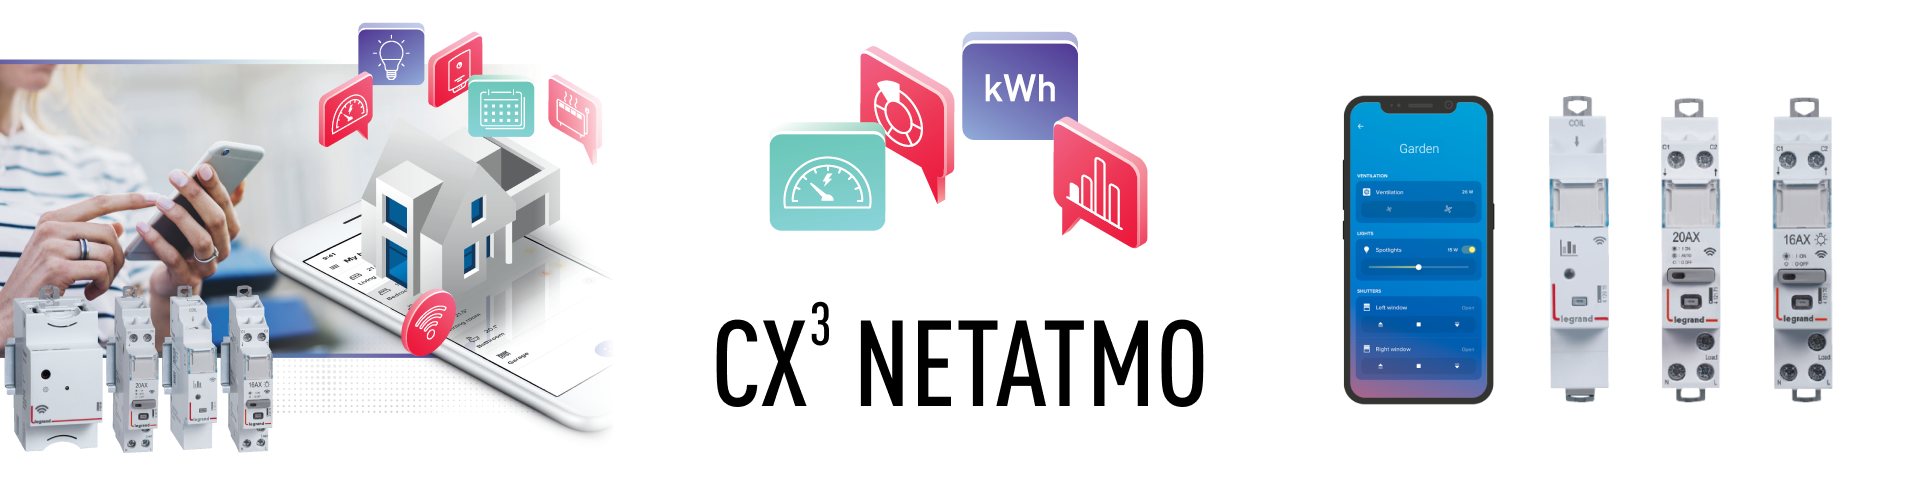 CX3 Netatmo - moduláris okosotthon megoldások